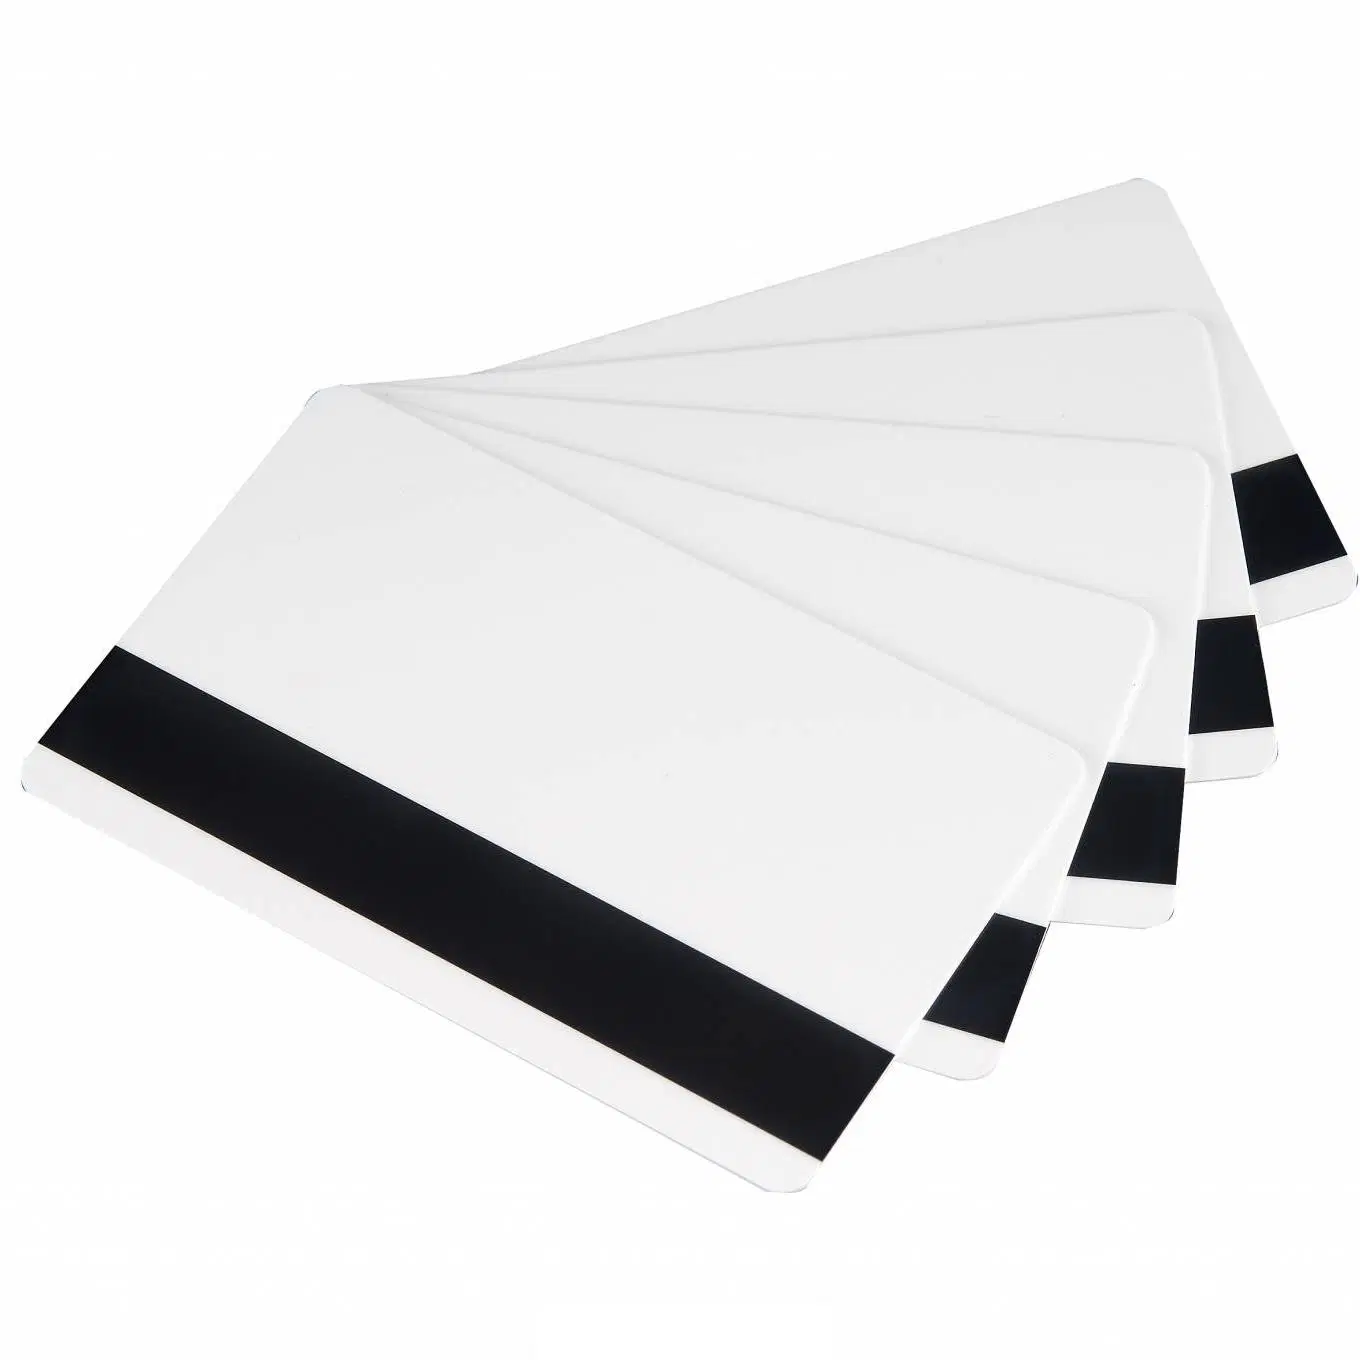 Tamaño de tarjeta de crédito de PVC Blank Magnetic Stripe para imprimir Tarjetas para el banco